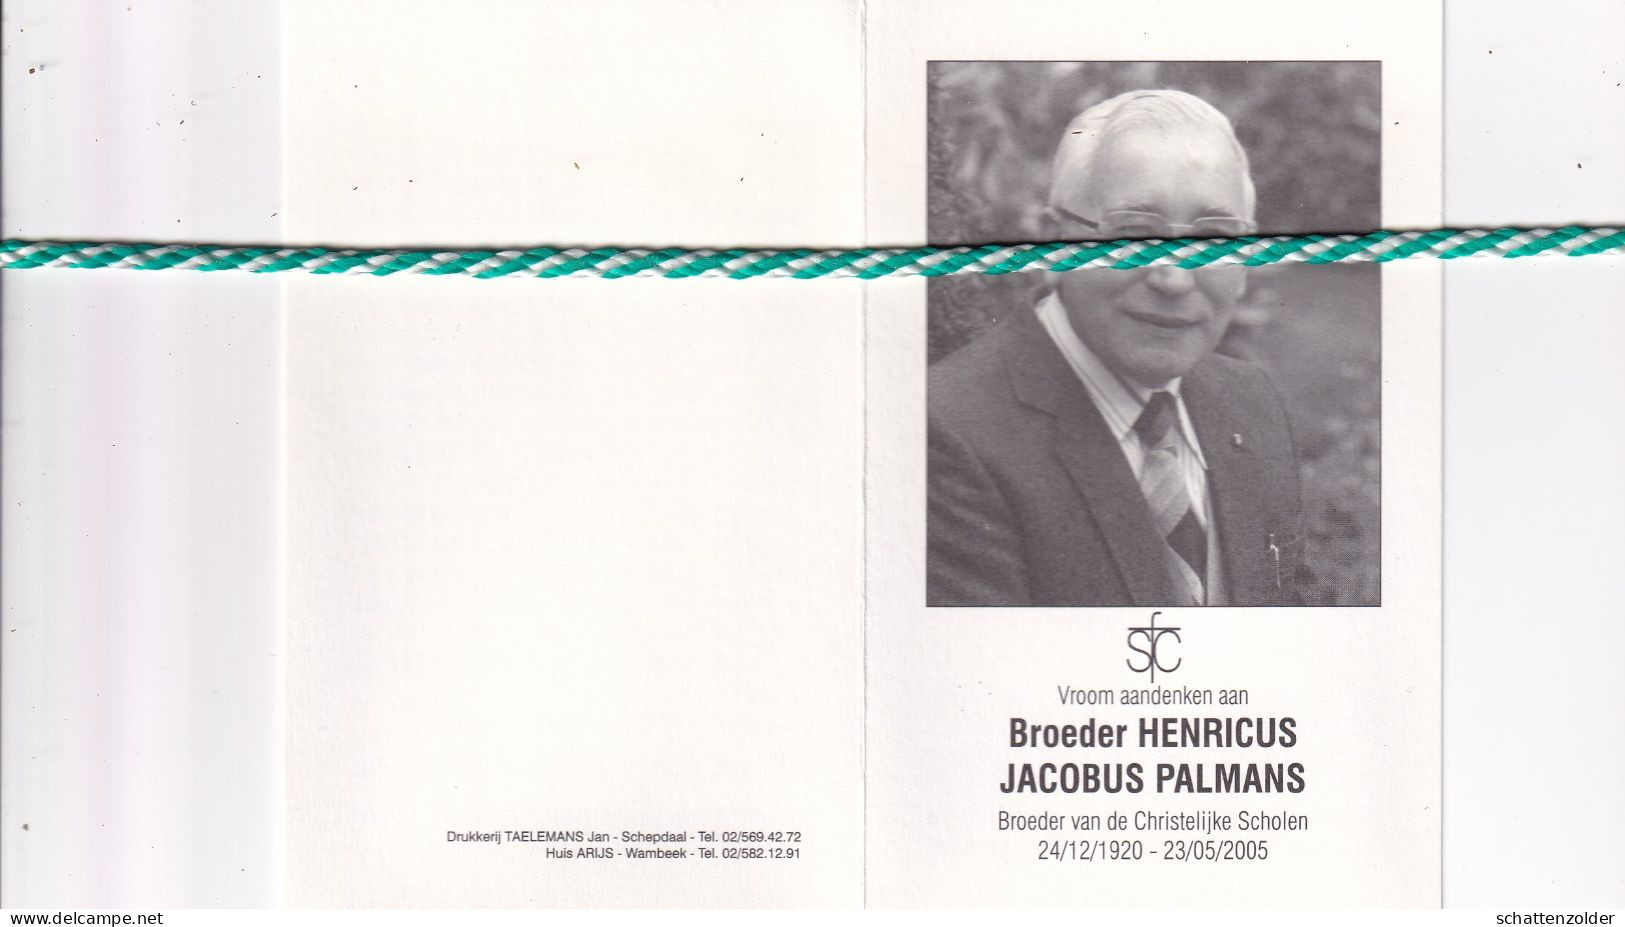 Broeder Henricus (Jacobus Palmans), Hamont 1920, Groot-Bijgaarden 2005. Foto - Overlijden